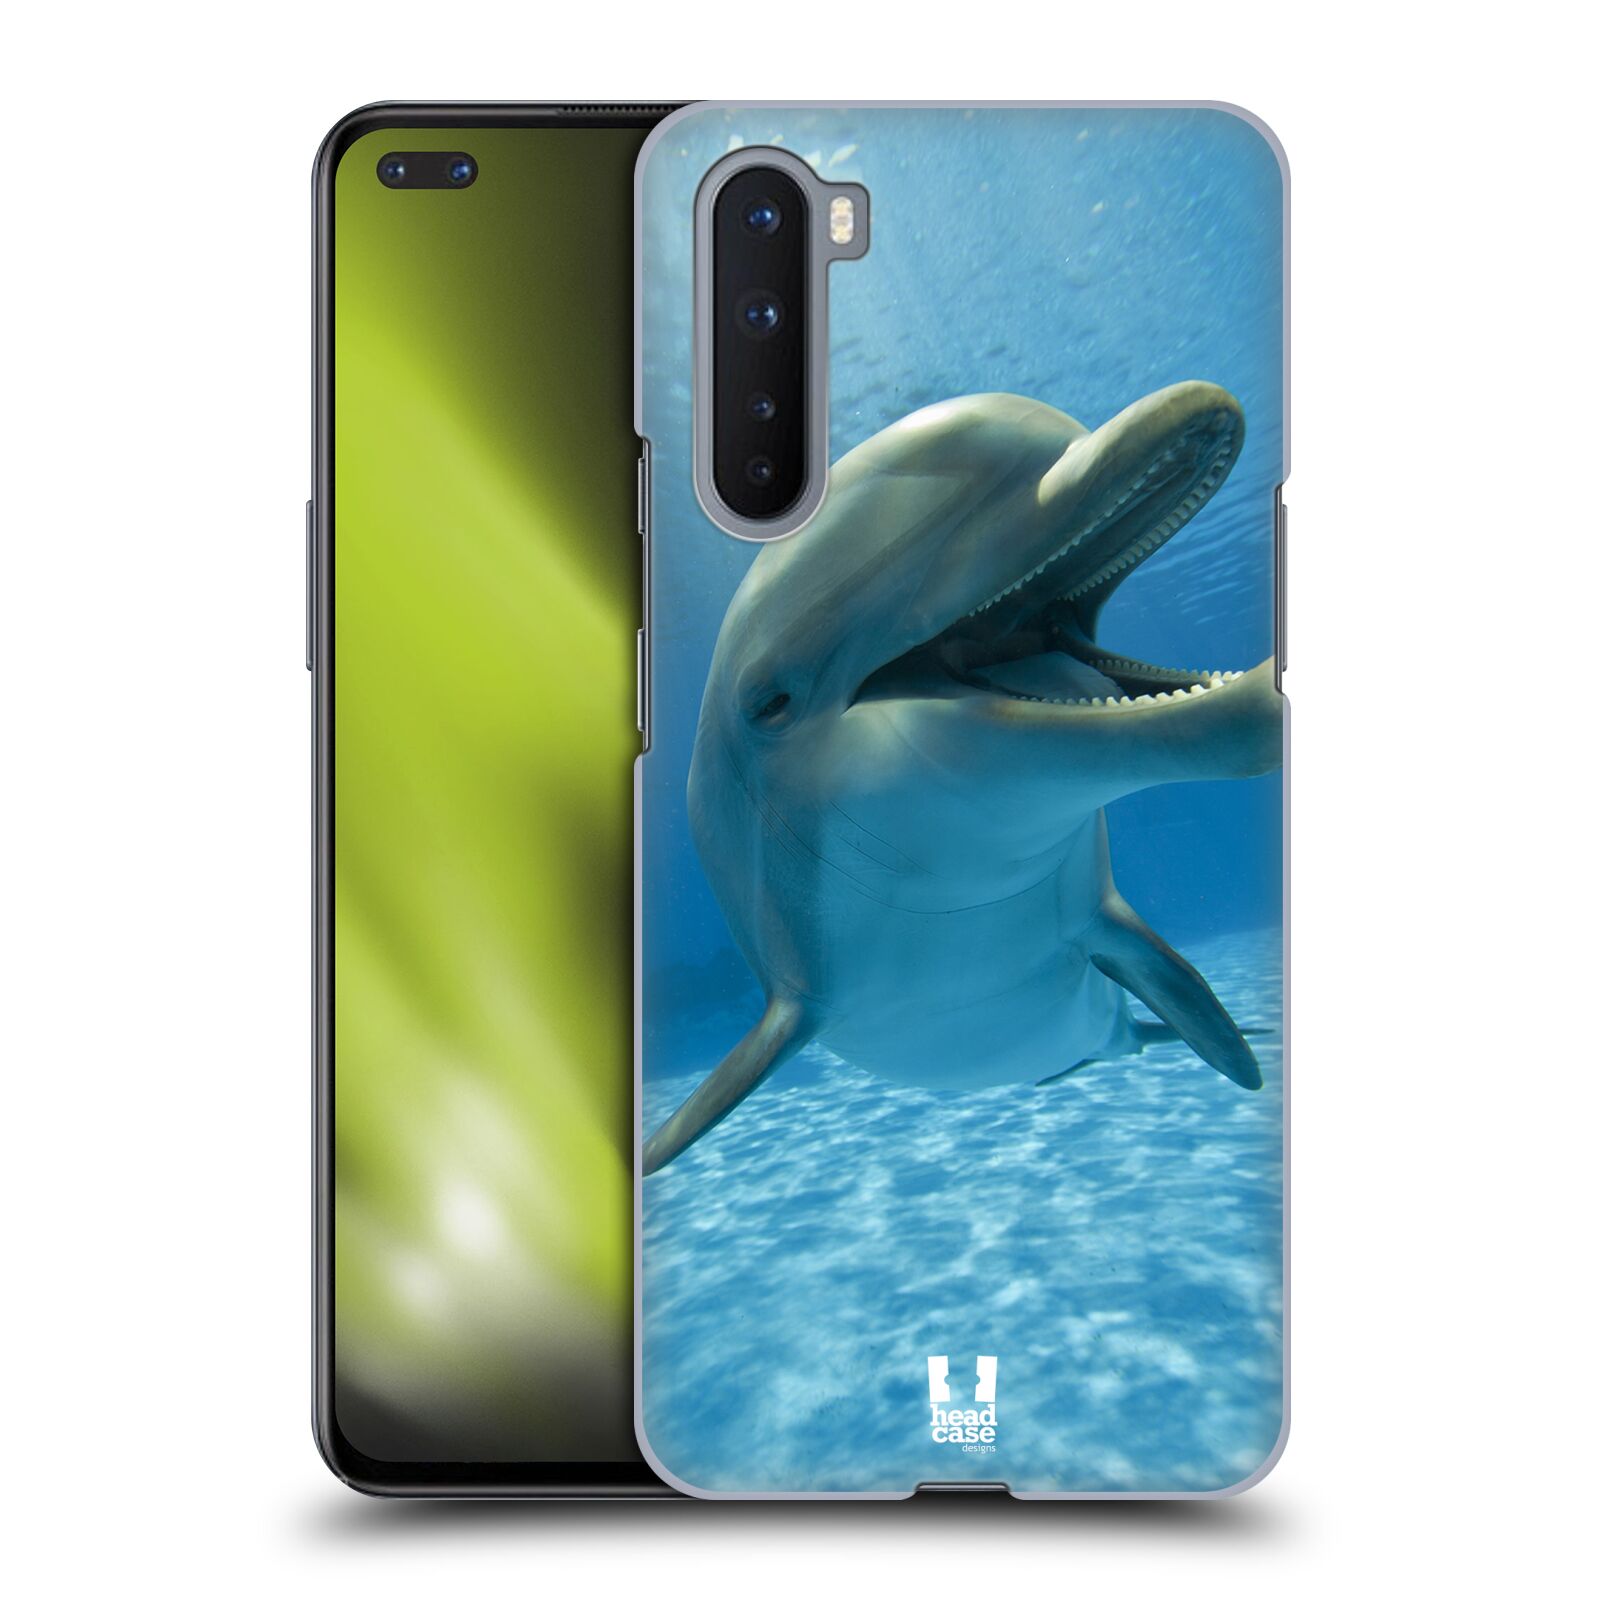 Zadní obal pro mobil OnePlus Nord - HEAD CASE - Svět zvířat delfín v moři